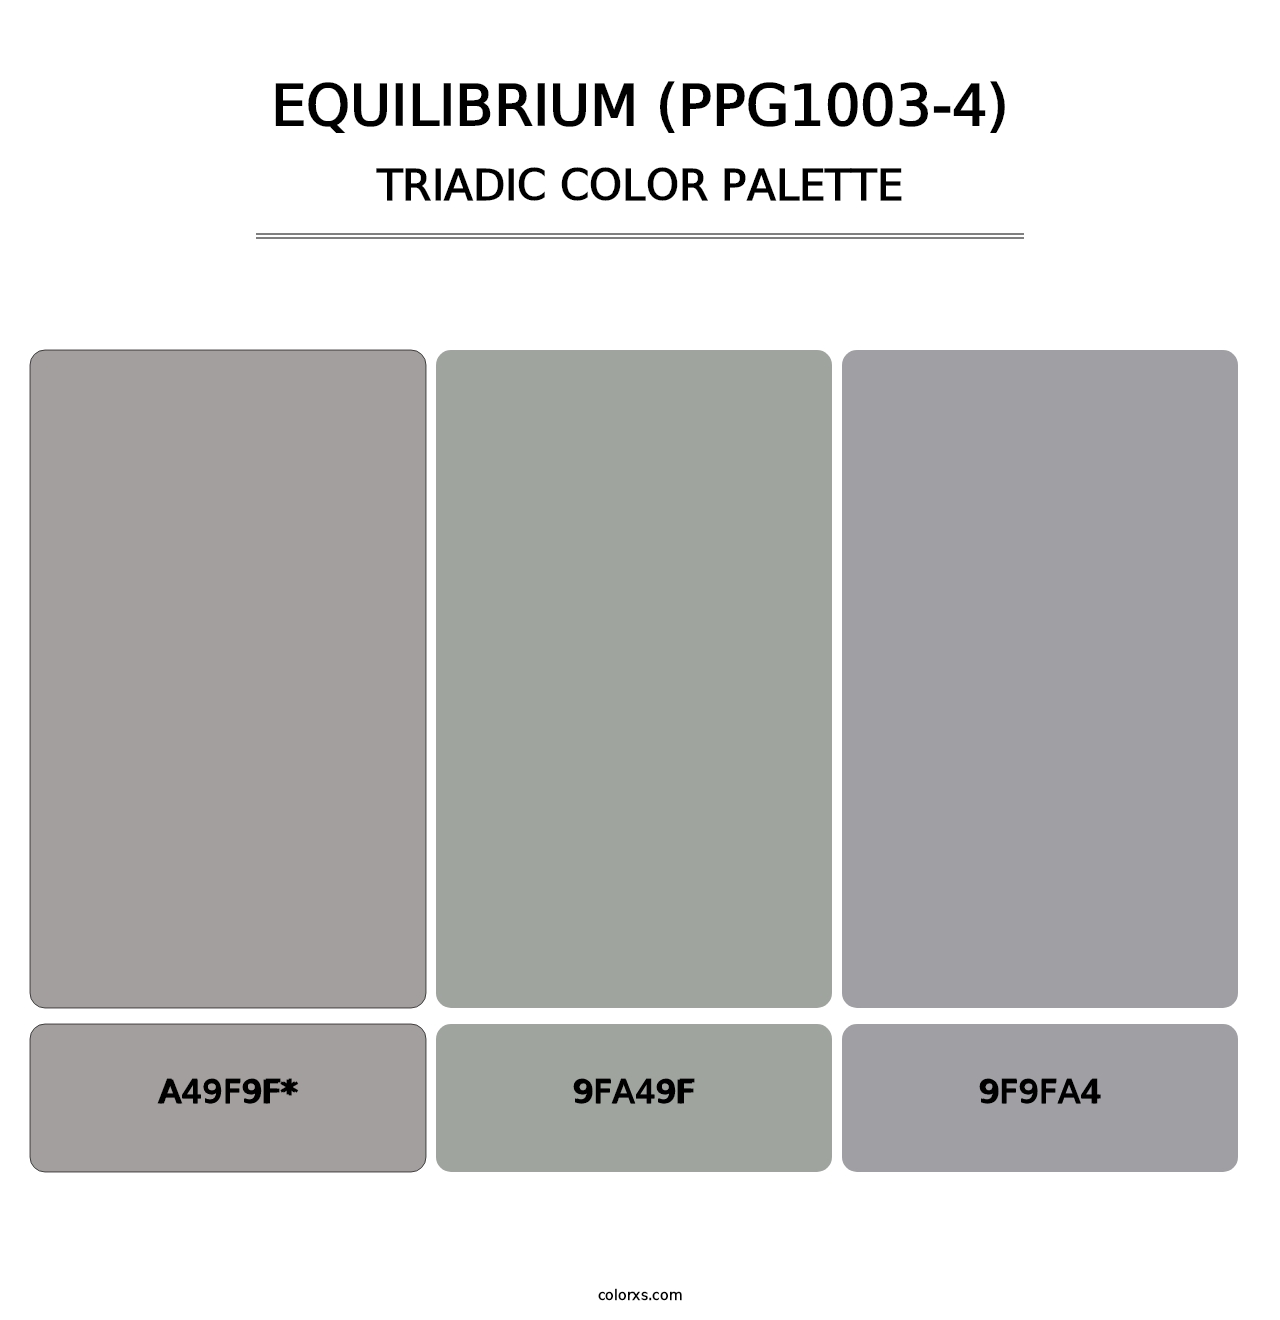 Equilibrium (PPG1003-4) - Triadic Color Palette